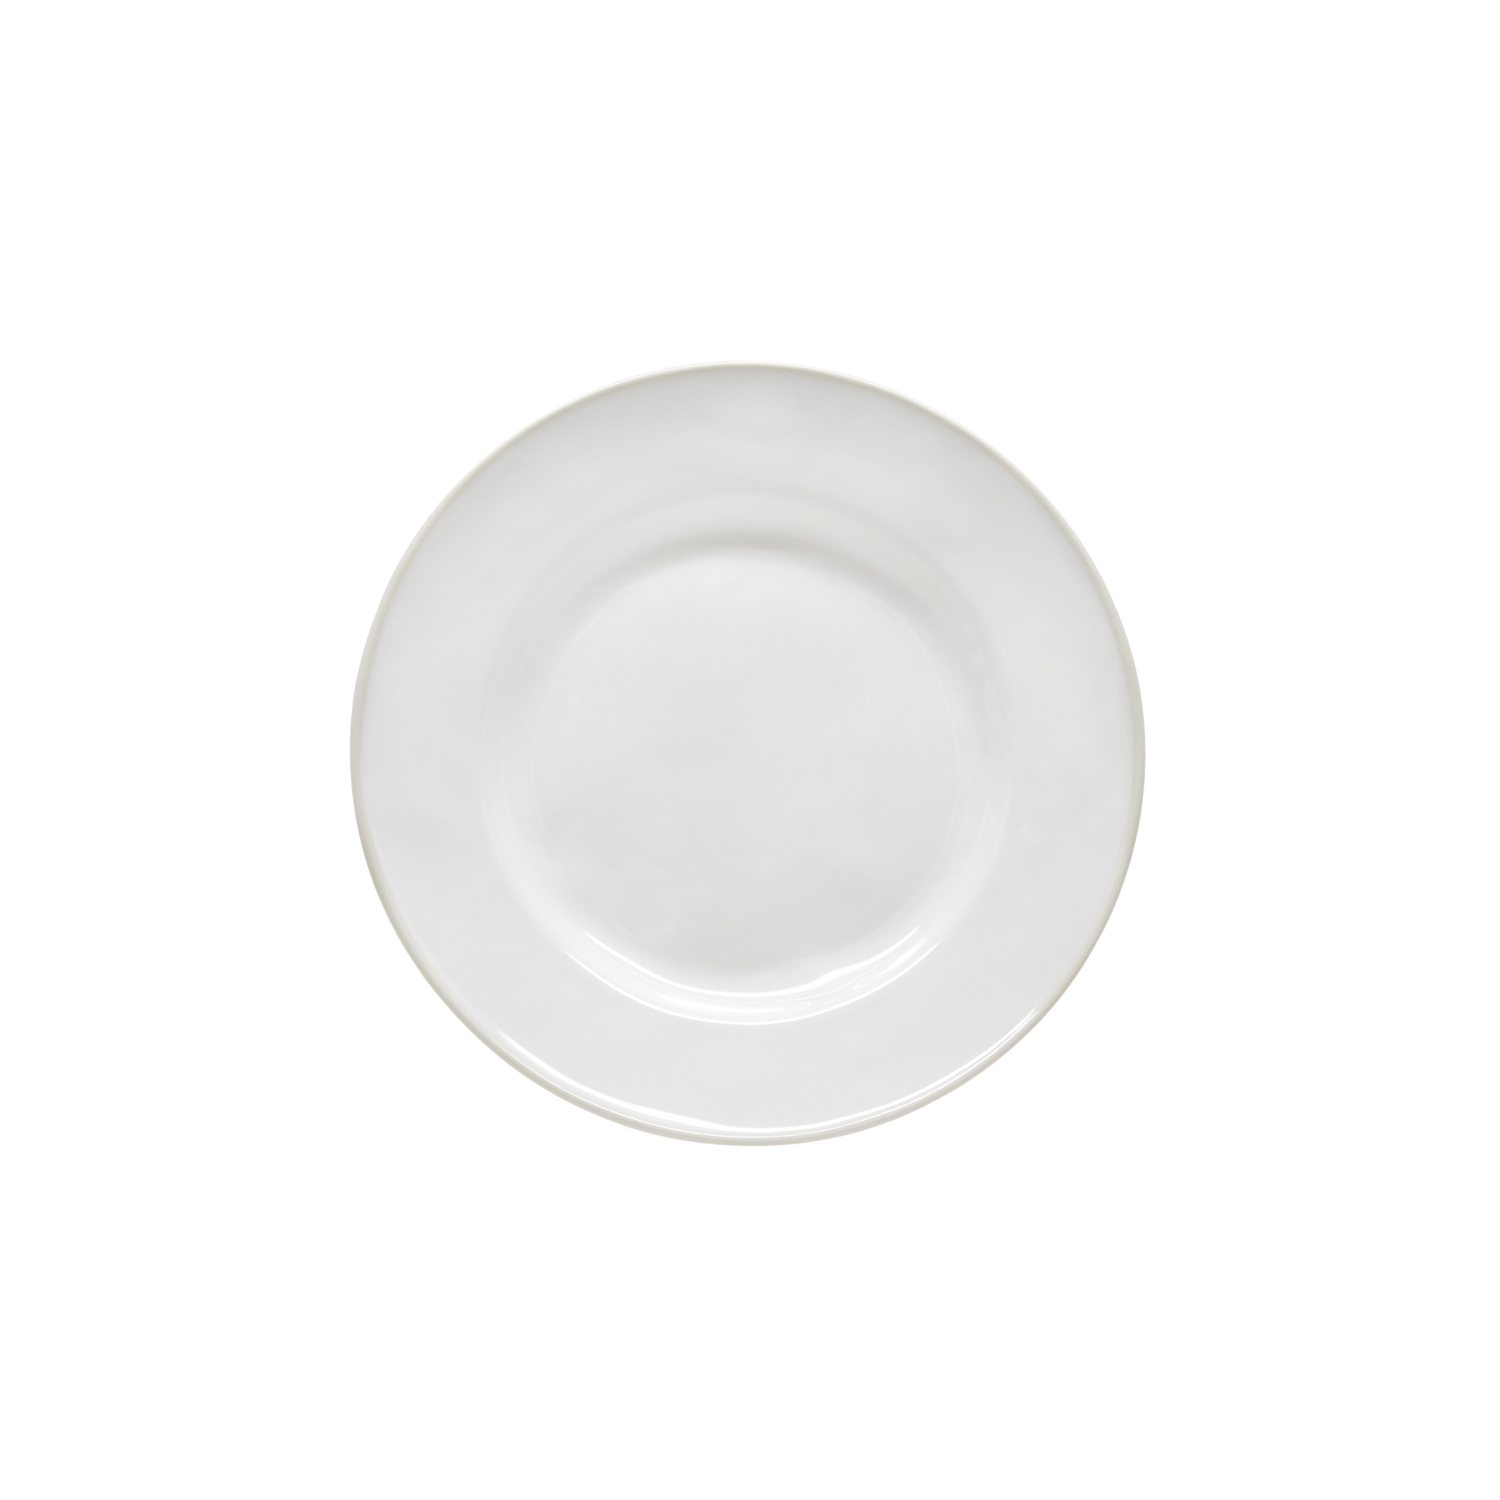 Beja White/cream Salad/dessert Plate 23cm Gift